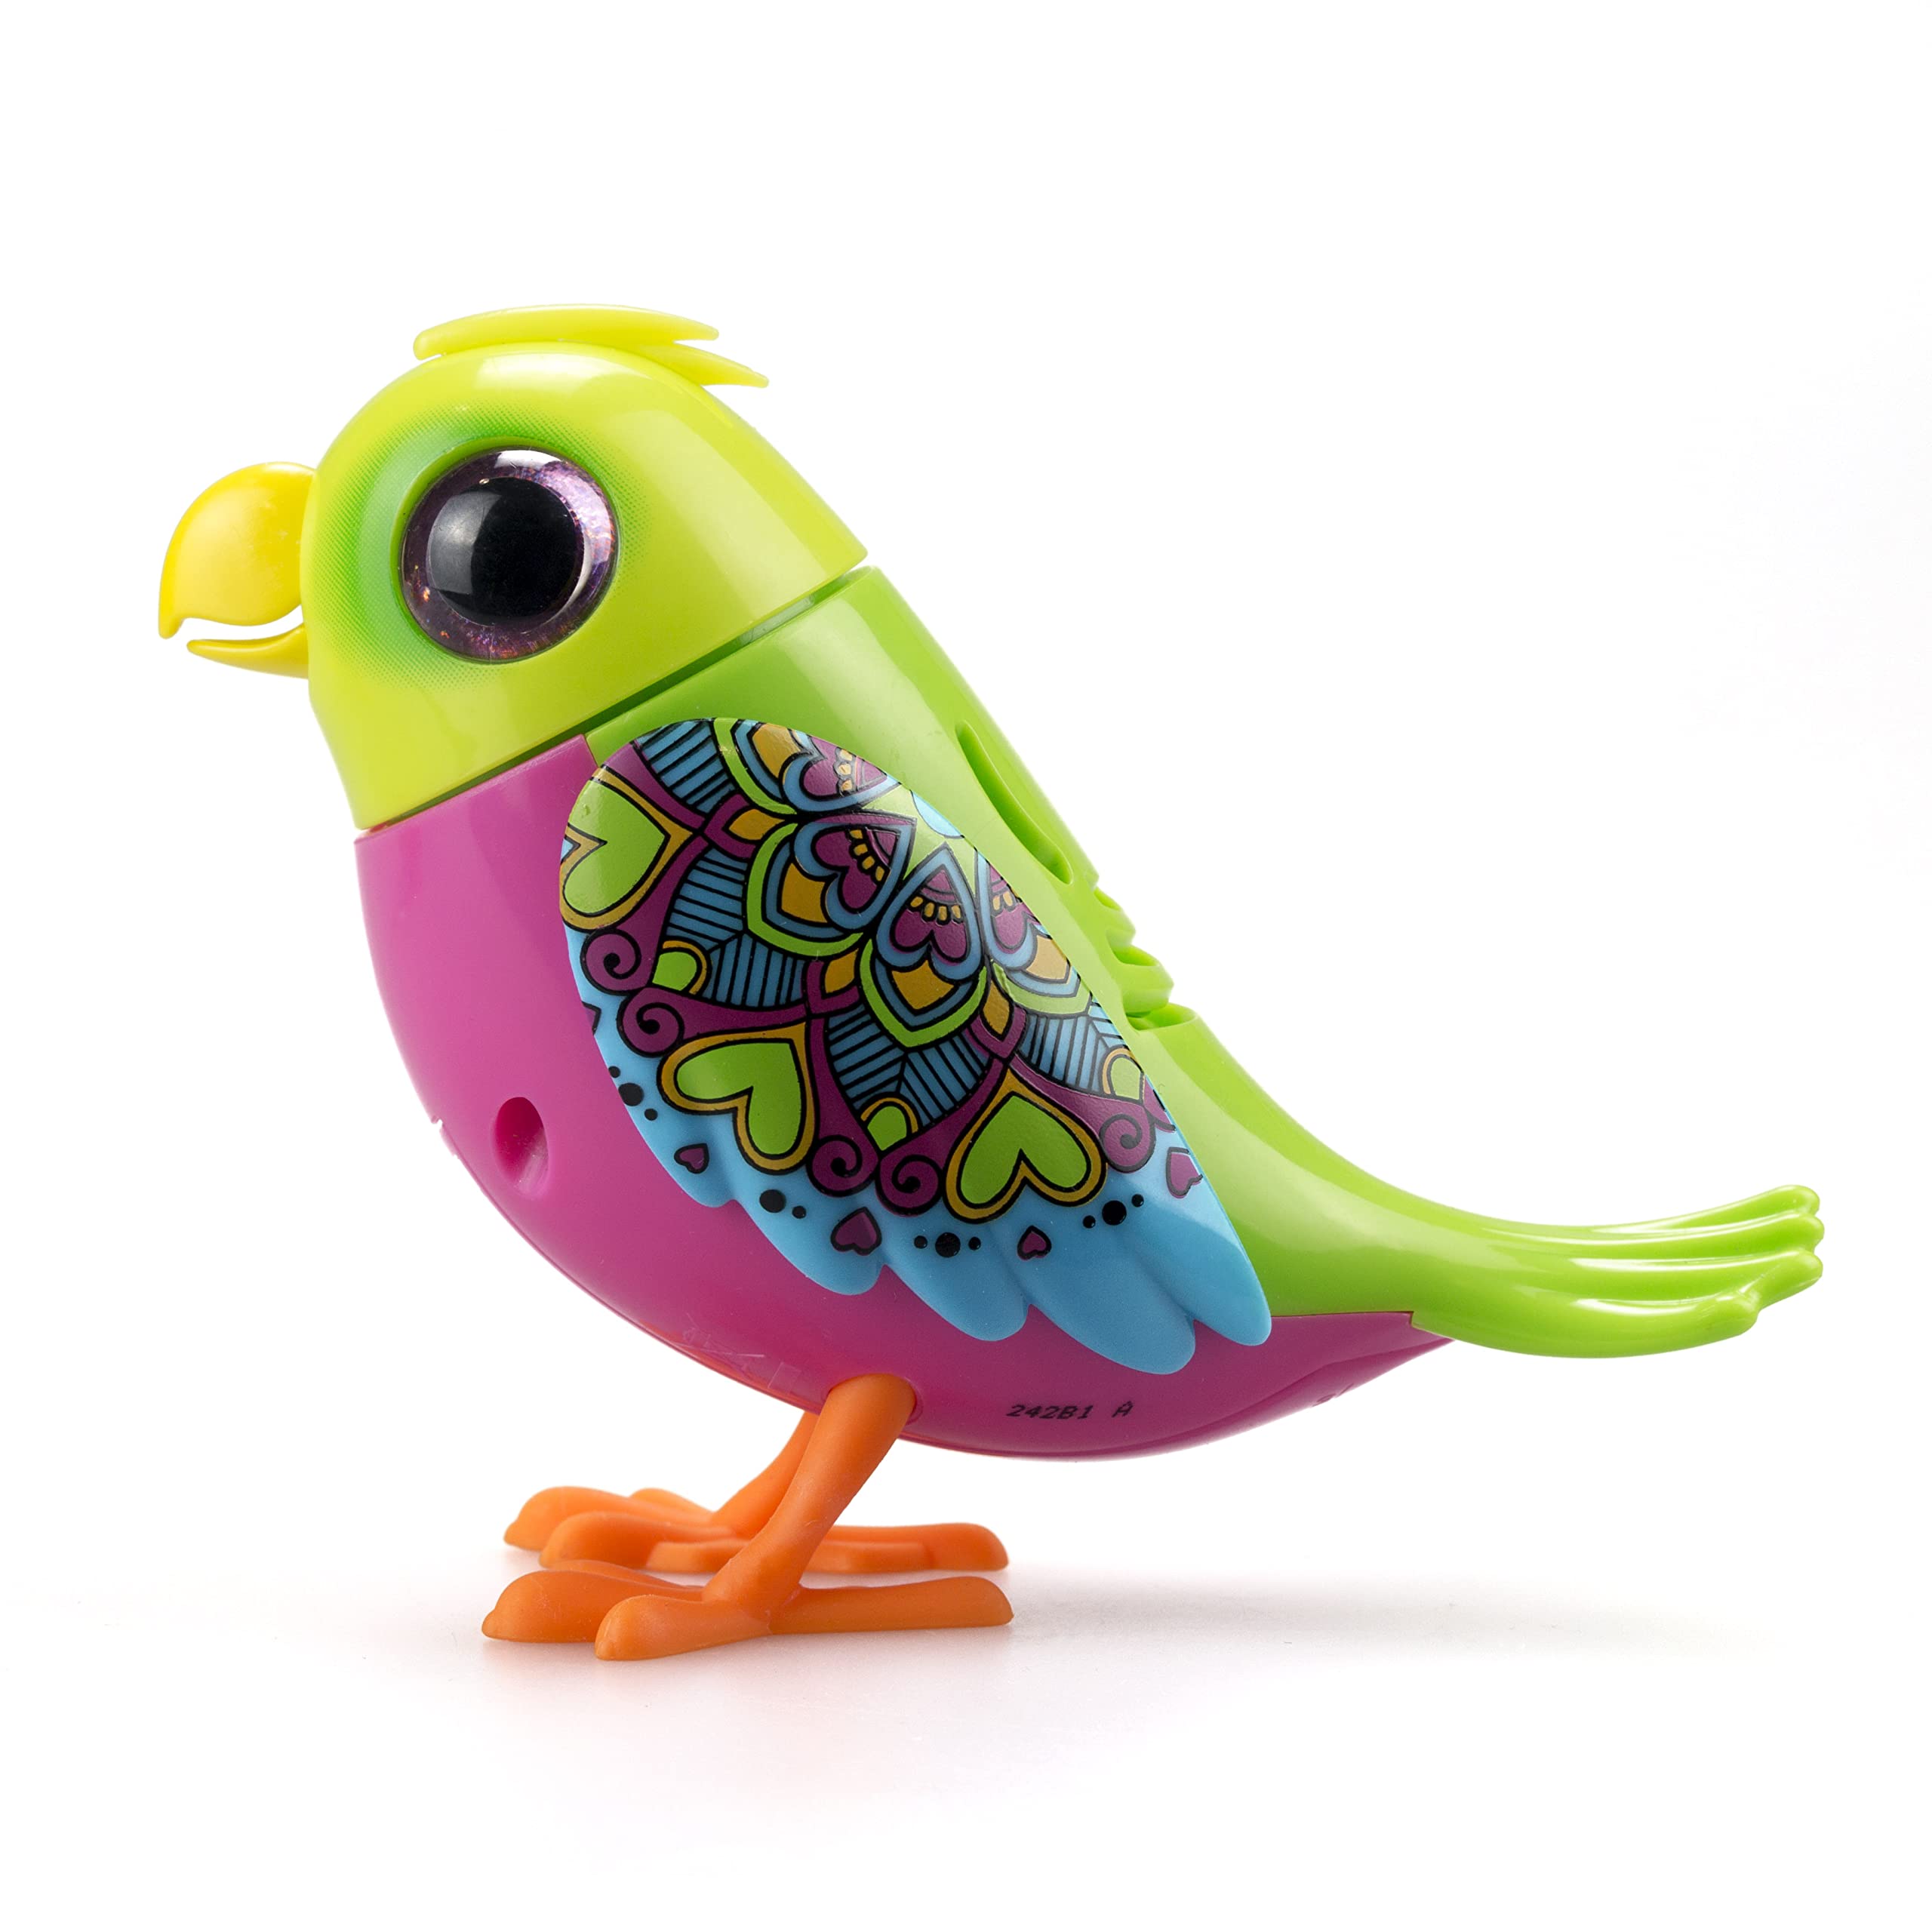 Silverlit Digibirds- Interactive Love Bird, Green